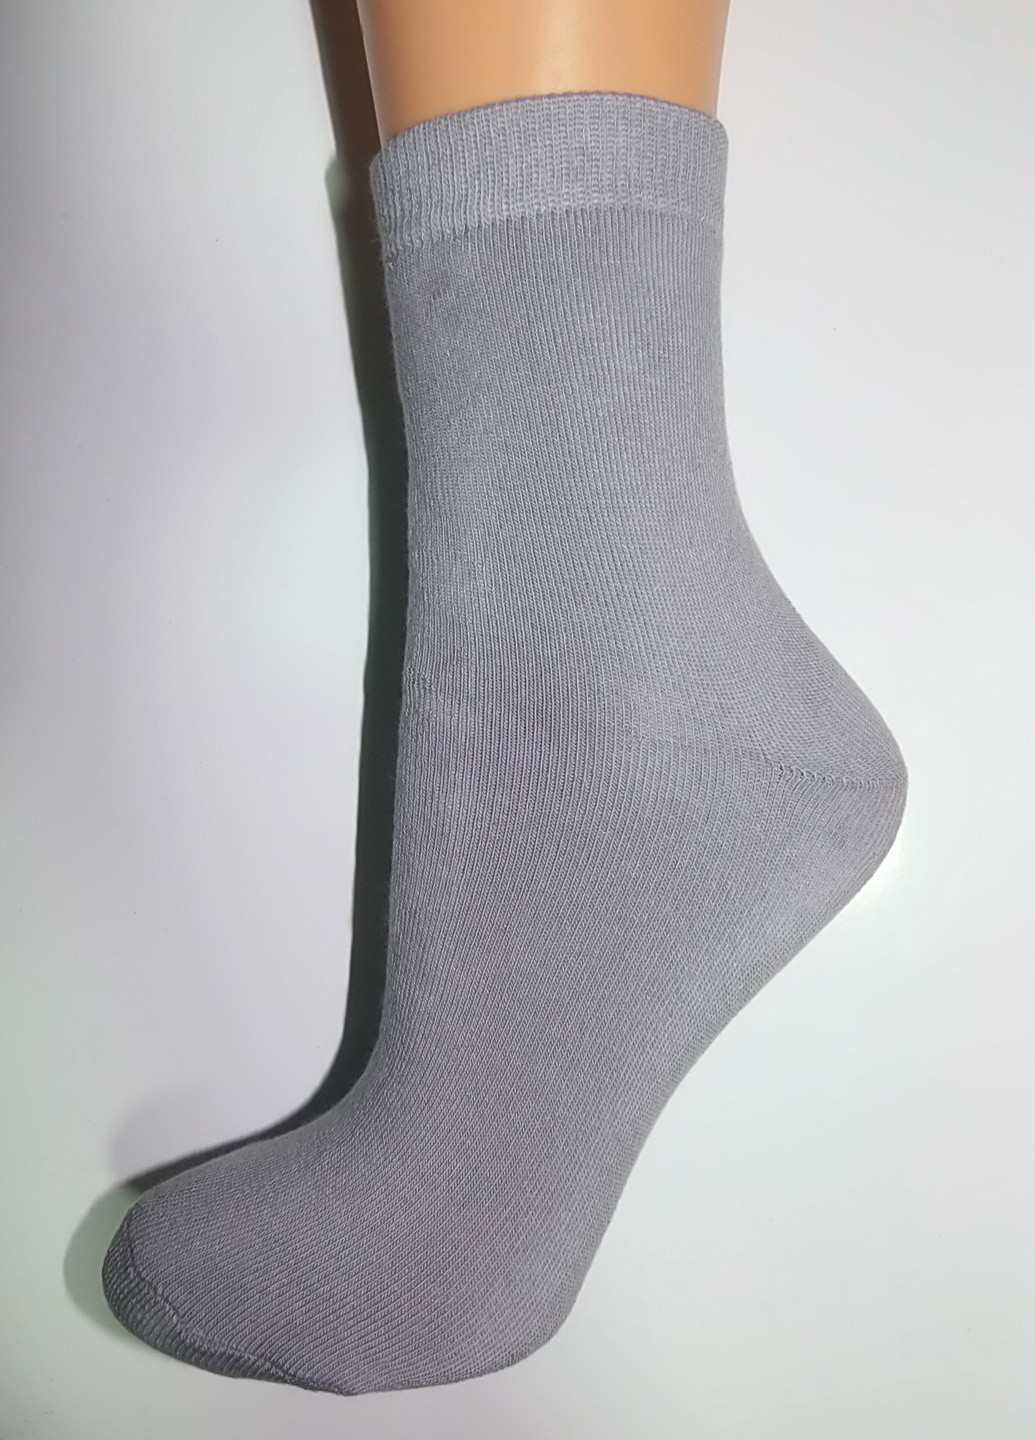 Шкарпетки плюш (махра) ТМ "Нова пара" 138 НОВА ПАРА середня висота (257155404)